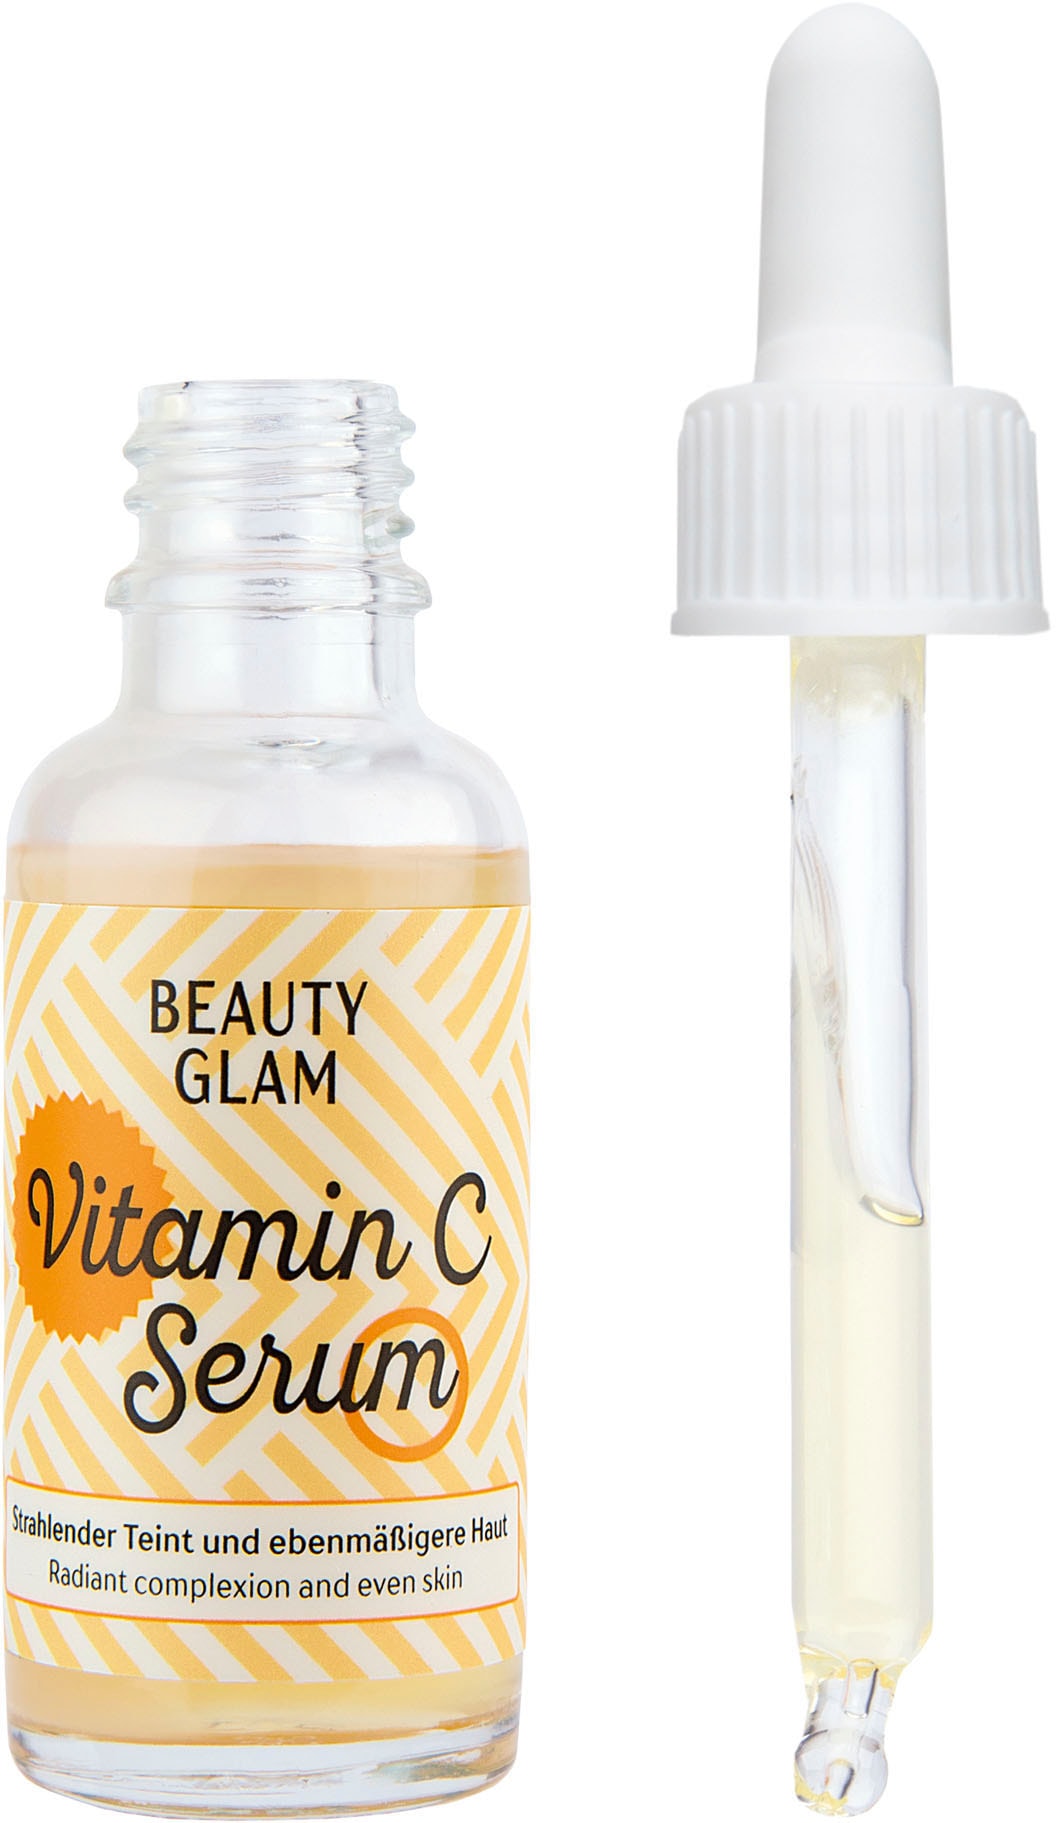 BEAUTY GLAM C Serum« bei Glam OTTOversand Vitamin »Beauty Gesichtsserum